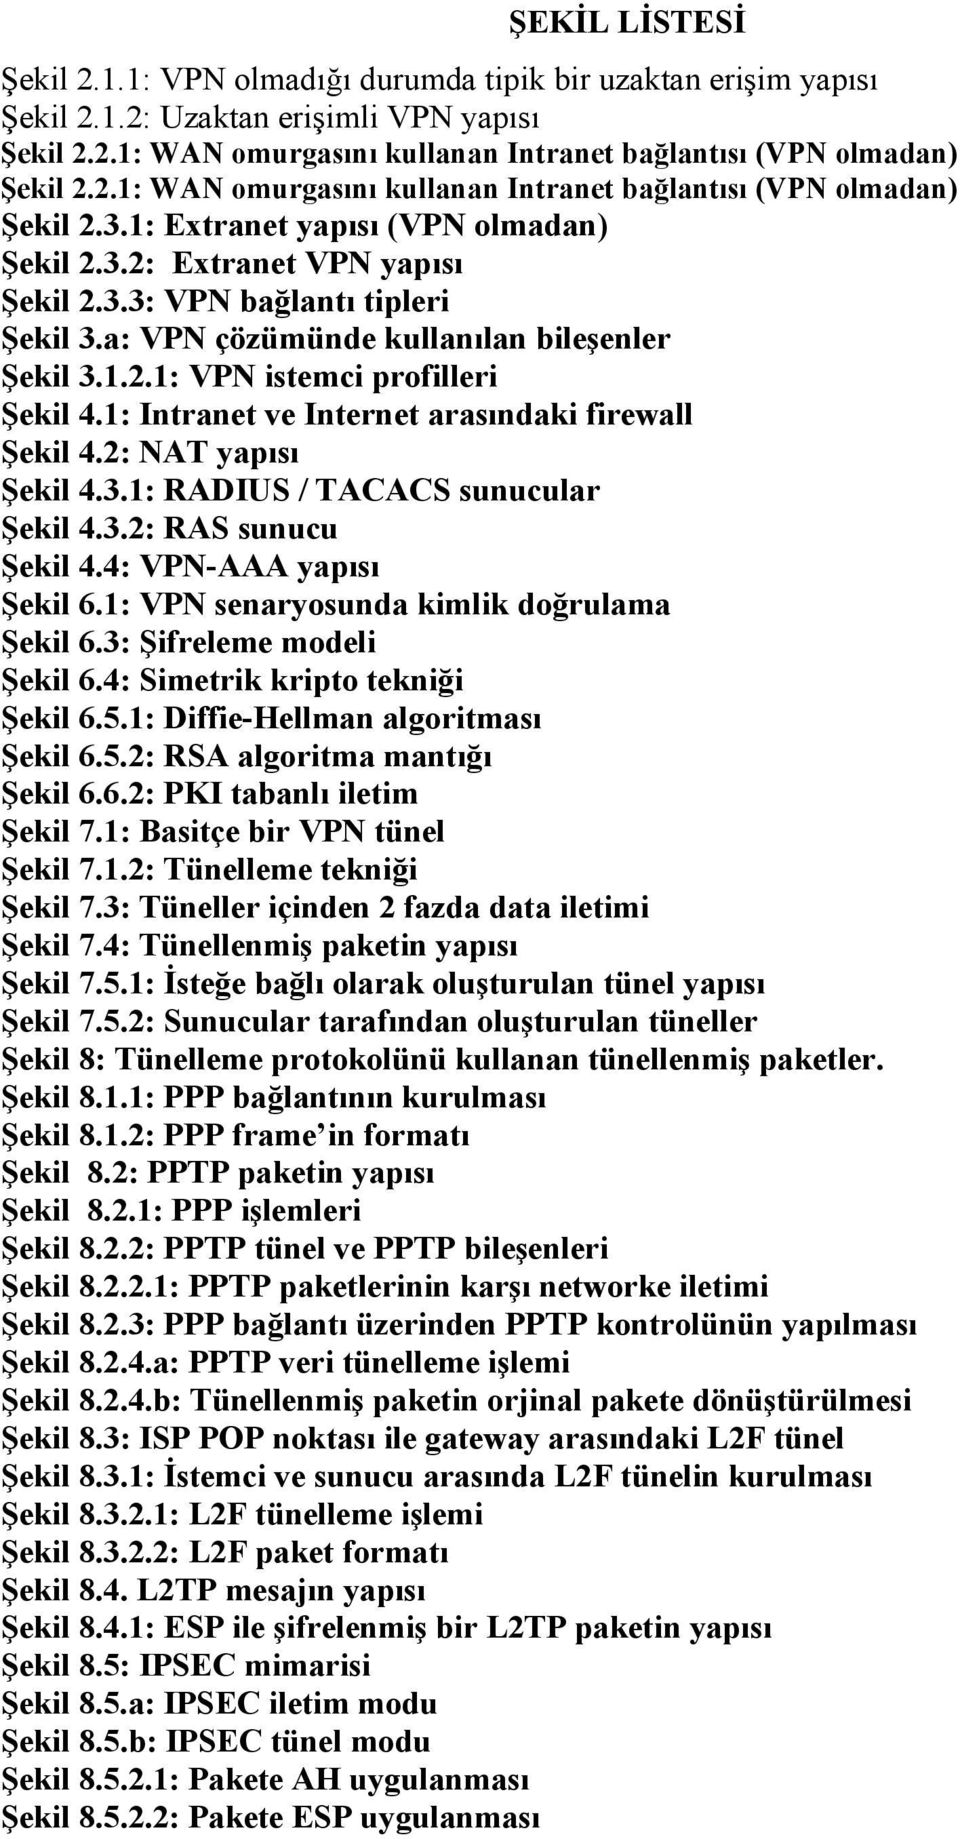 a: VPN çözümünde kullanılan bileşenler Şekil 3.1.2.1: VPN istemci profilleri Şekil 4.1: Intranet ve Internet arasındaki firewall Şekil 4.2: NAT yapısı Şekil 4.3.1: RADIUS / TACACS sunucular Şekil 4.3.2: RAS sunucu Şekil 4.